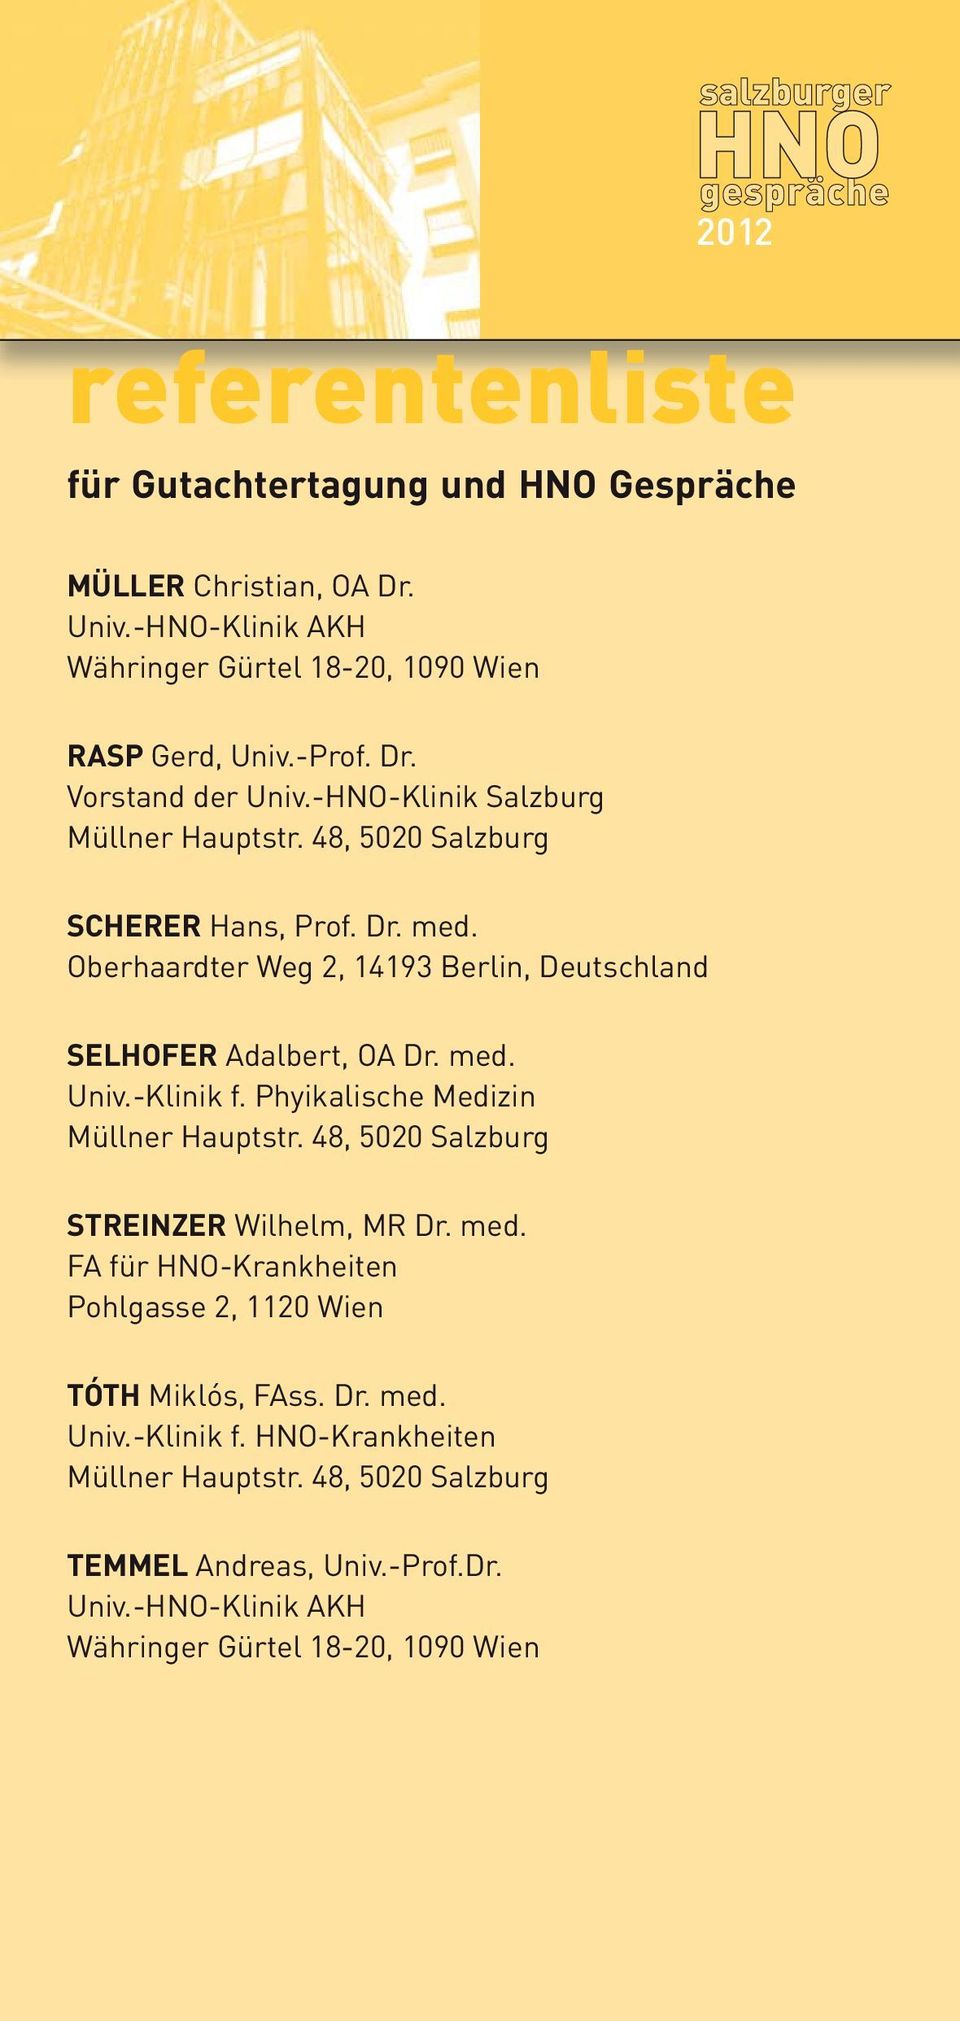 -Klinik f. Phyikalische Medizin Müllner Hauptstr. 48, 5020 Salzburg STREINZER Wilhelm, MR Dr. med. FA für HNO-Krankheiten Pohlgasse 2, 1120 Wien TÓTH Miklós, FAss. Dr. med. Univ.